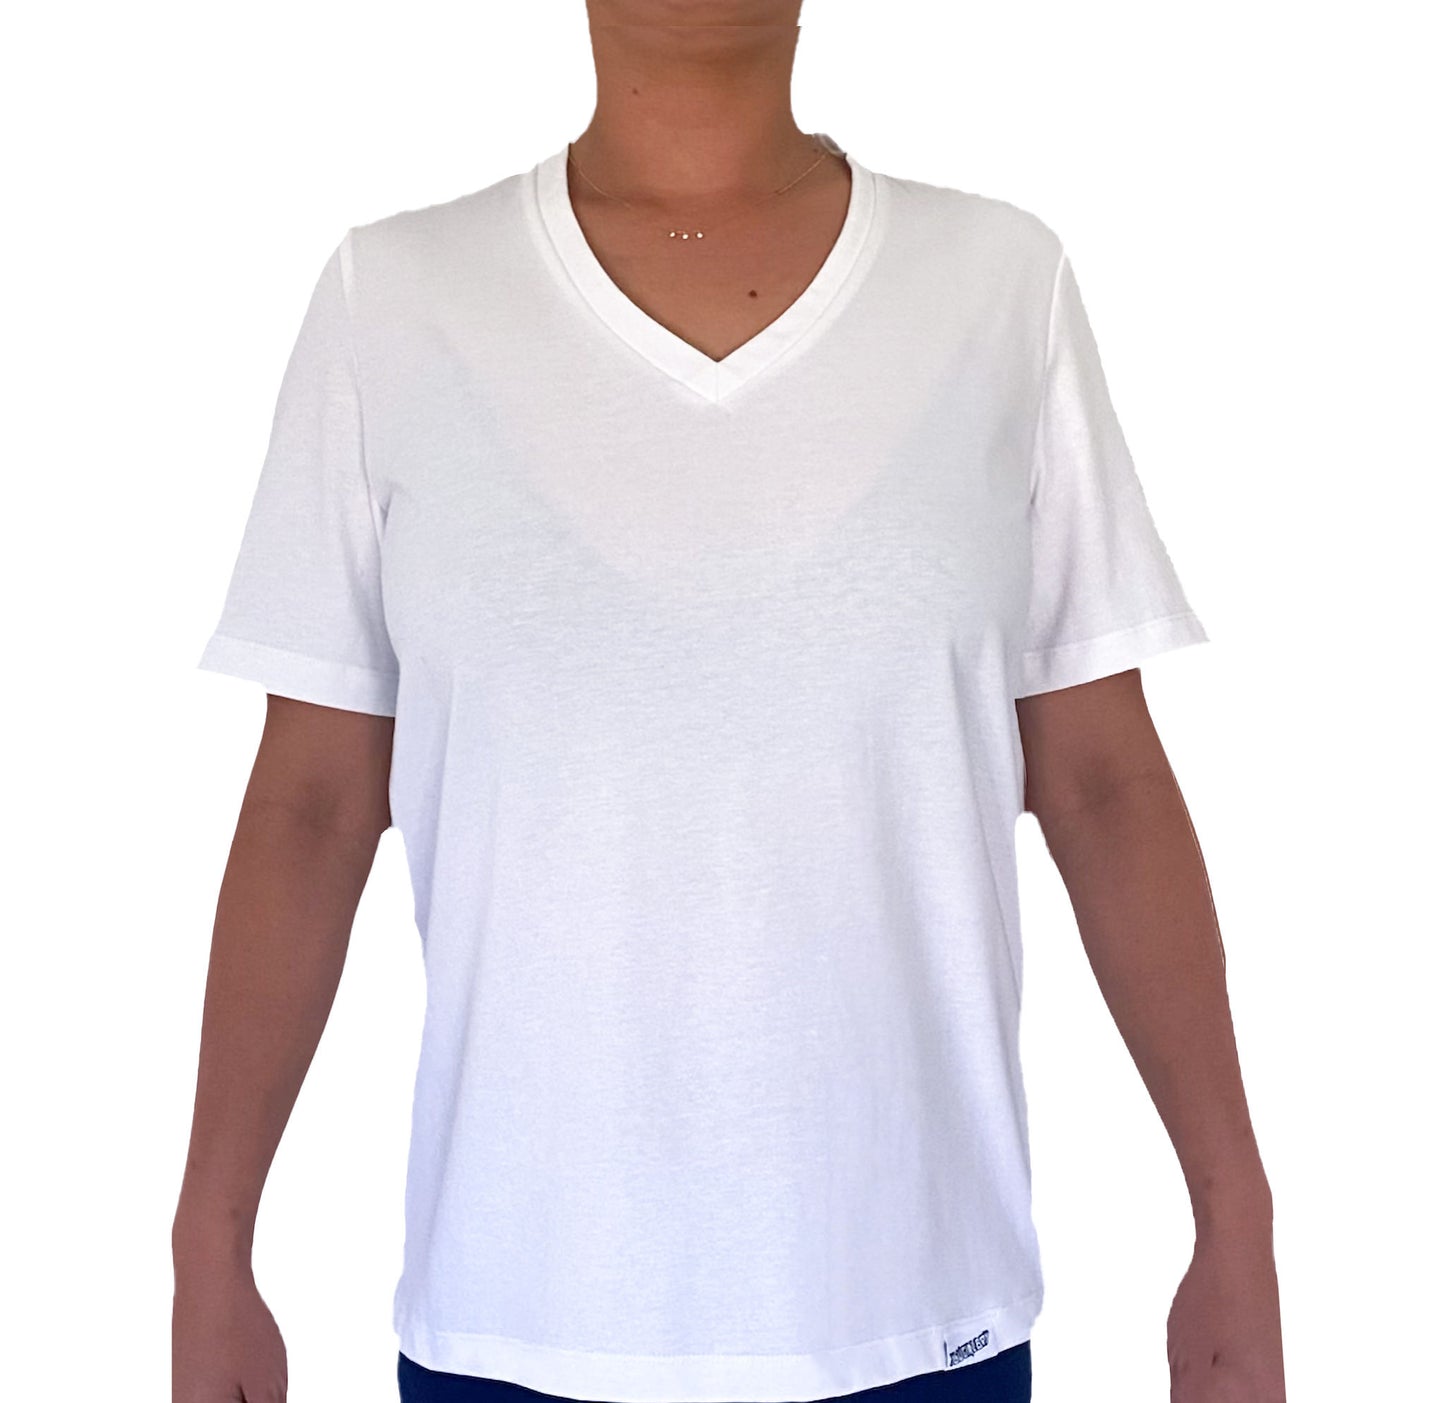 Ethical organic unisex t-shirt White V neck pronouns